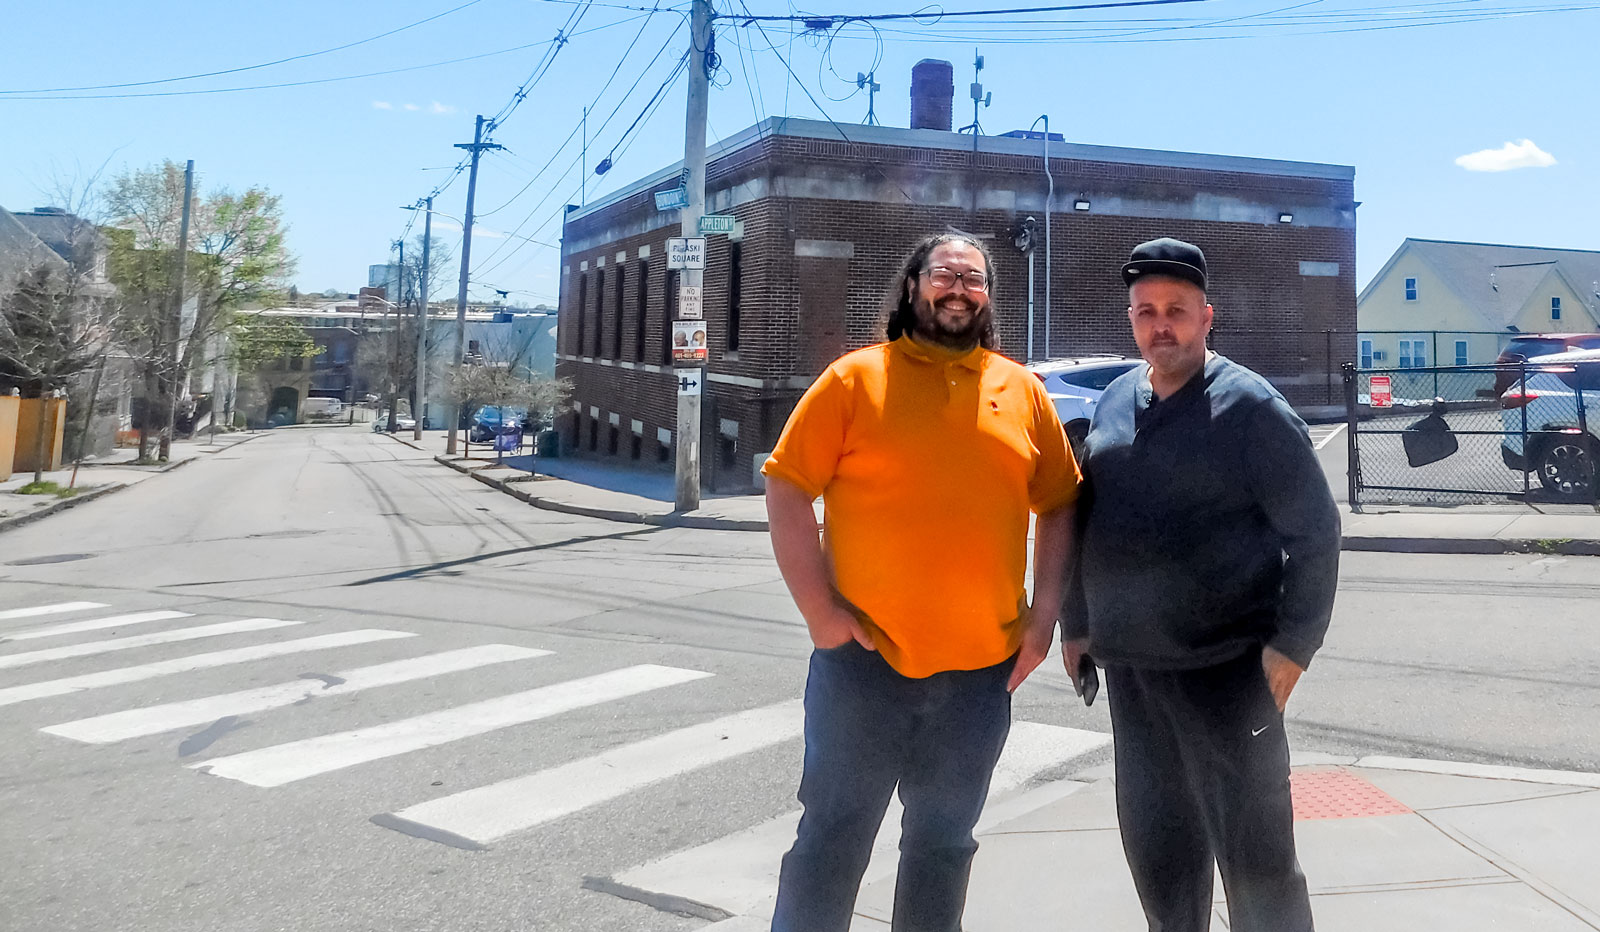 Antonio Rodríguez, Subdirector de Gestión de Activos de ONE|NB, a la izquierda, y Harry Quiñones, de Providence, frente a la oficina de ONE Neighborhood Builders' en Chaffee Street, donde se encuentra uno de los transmisores WiFi de ONE|NB Connects.